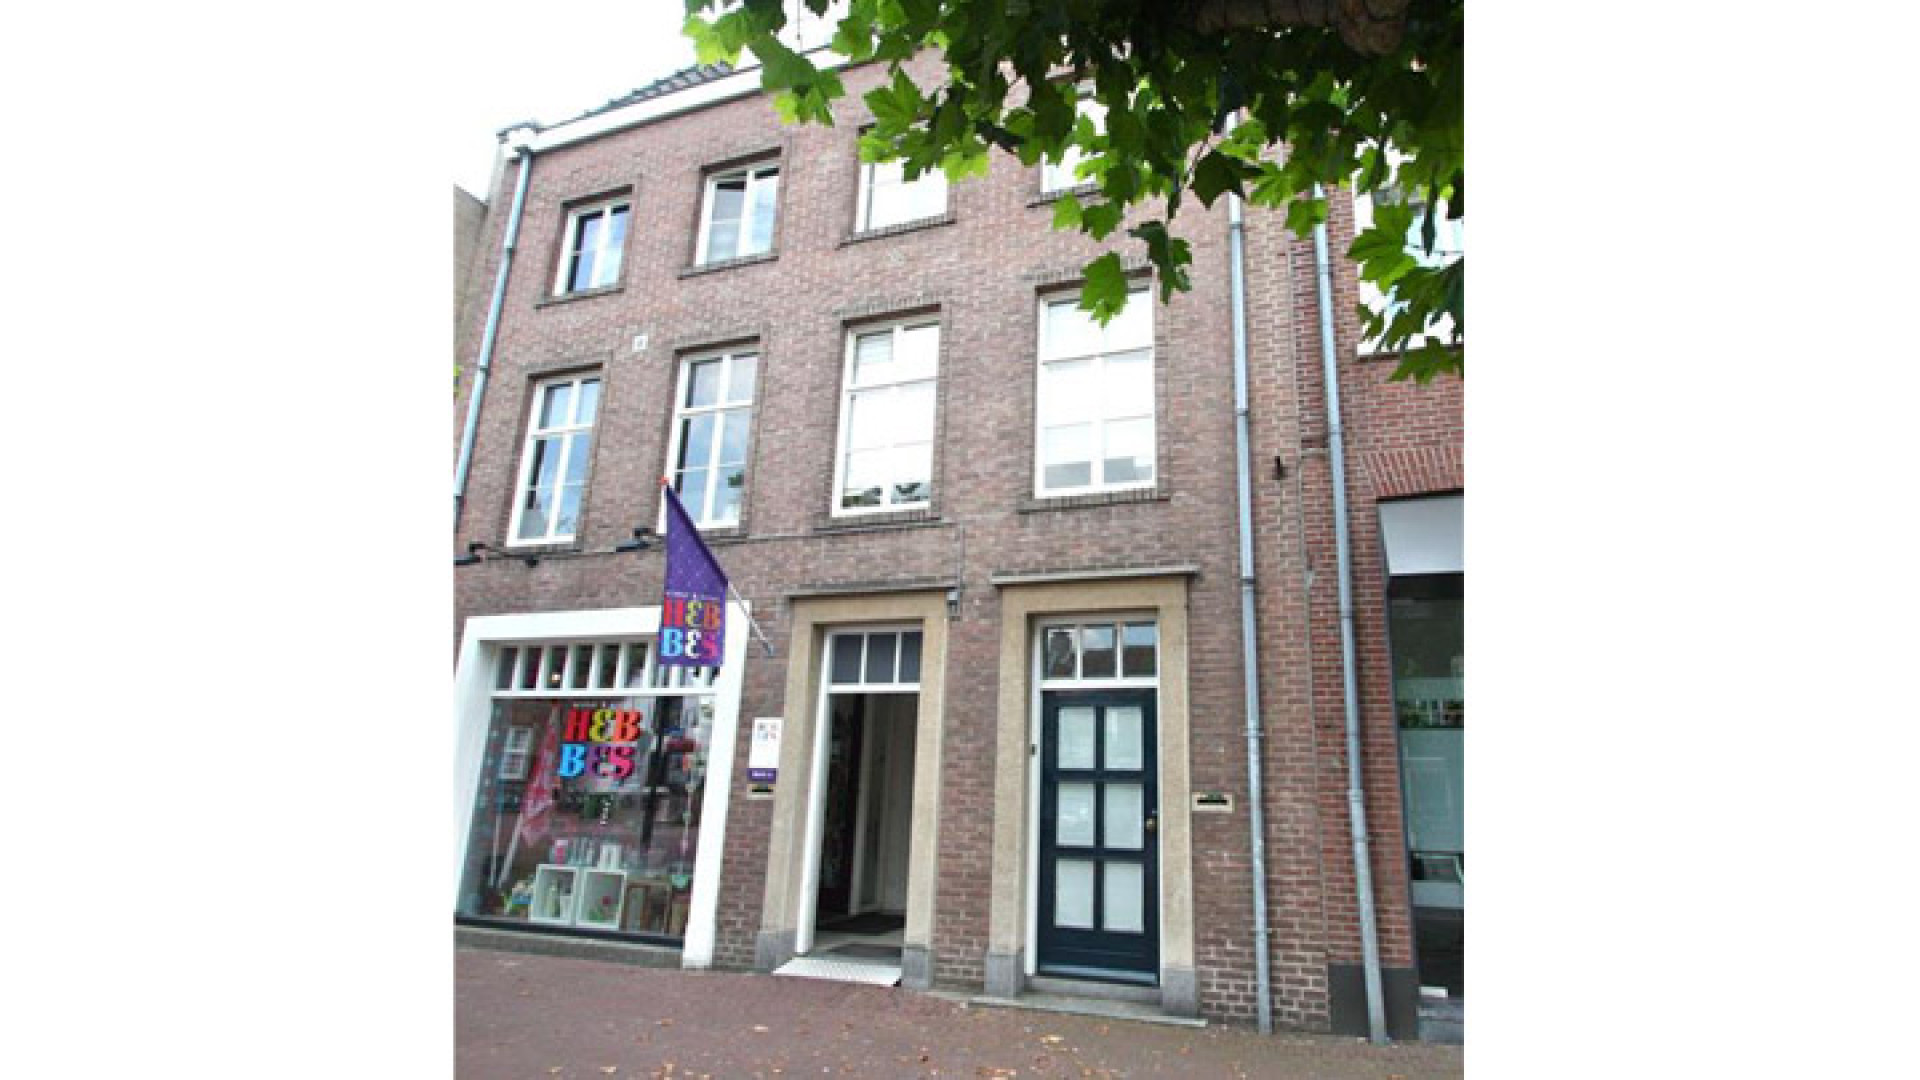 Binnenkijken bij te koopstaand appartement van failliete Geert Hoes. Zie foto's